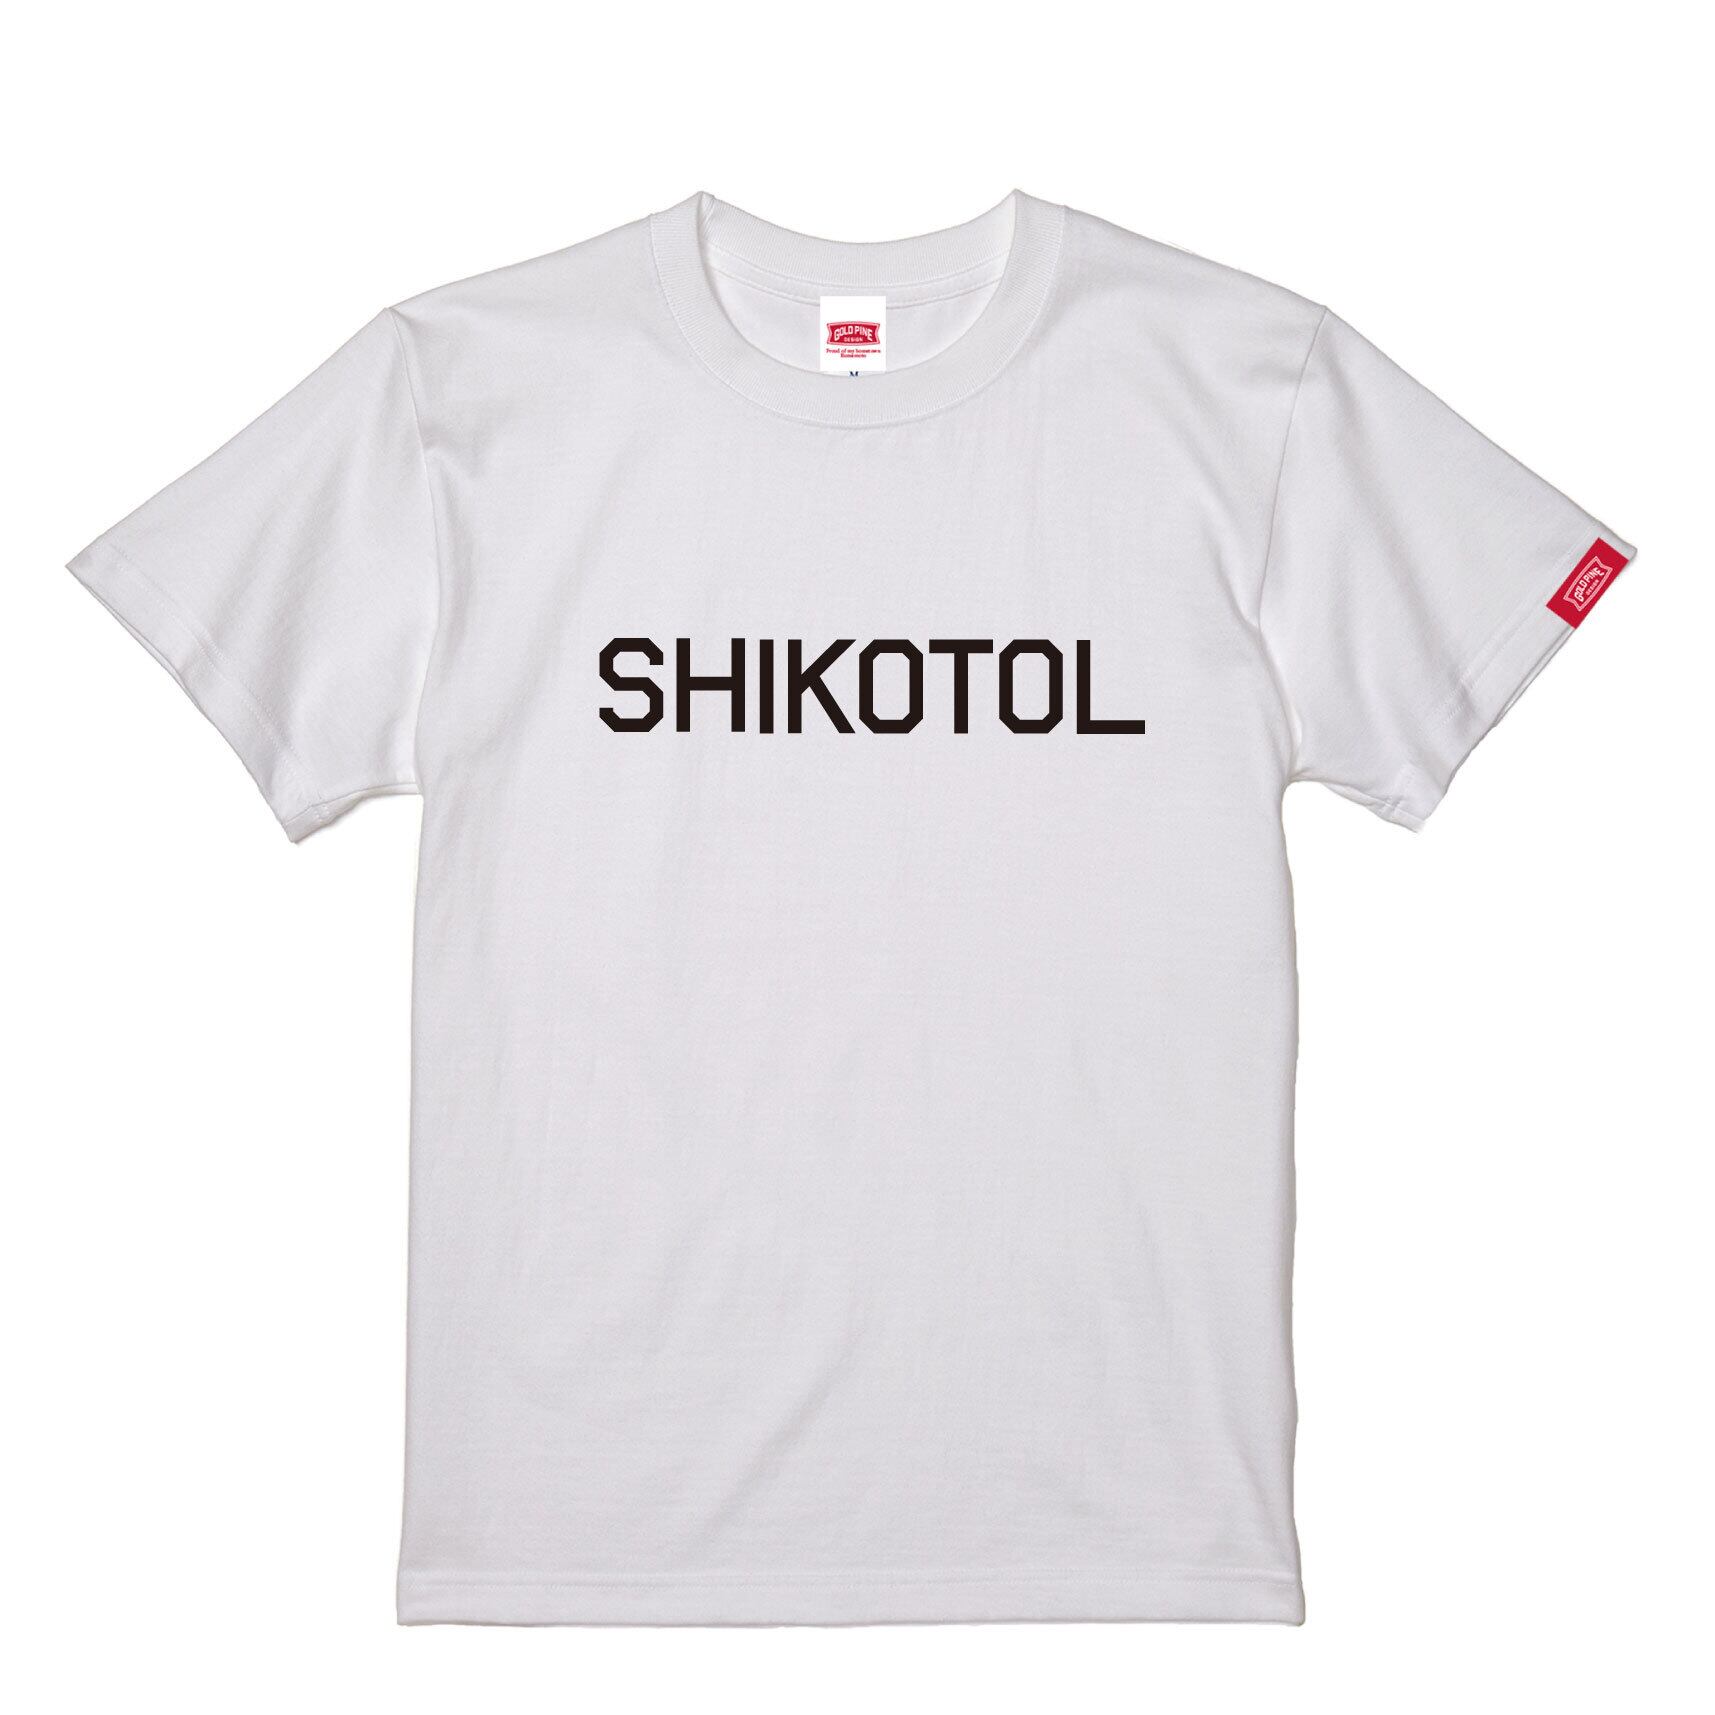 SHIKOTOL-Tshirt【Adult】White